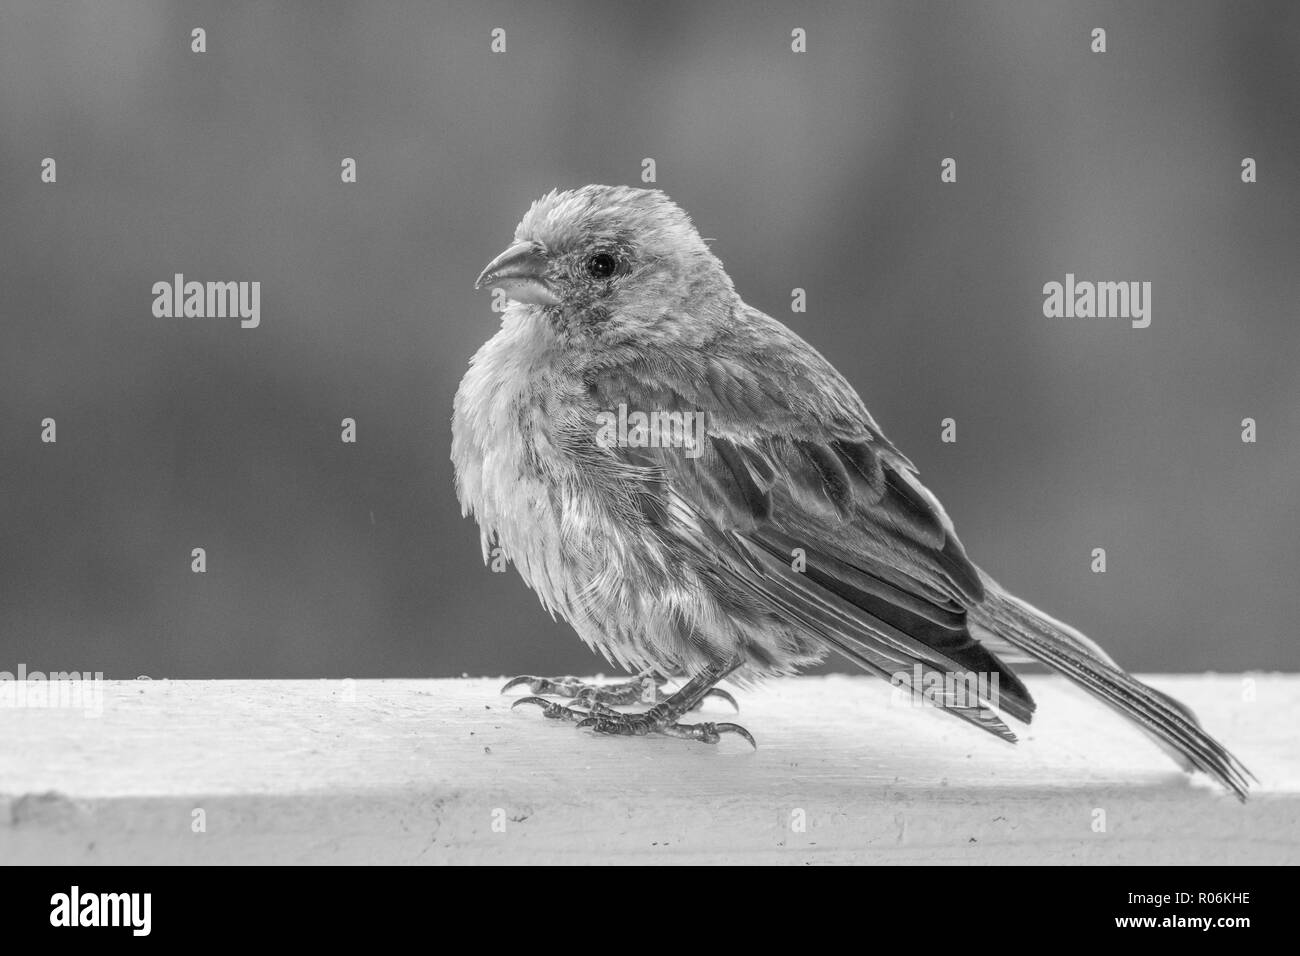 Schwarze und weiße Nahaufnahme Profil House finch Vogel auf Geländer mit Detail in Fluffed Federn und hellen Augen und Schnabel Stockfoto